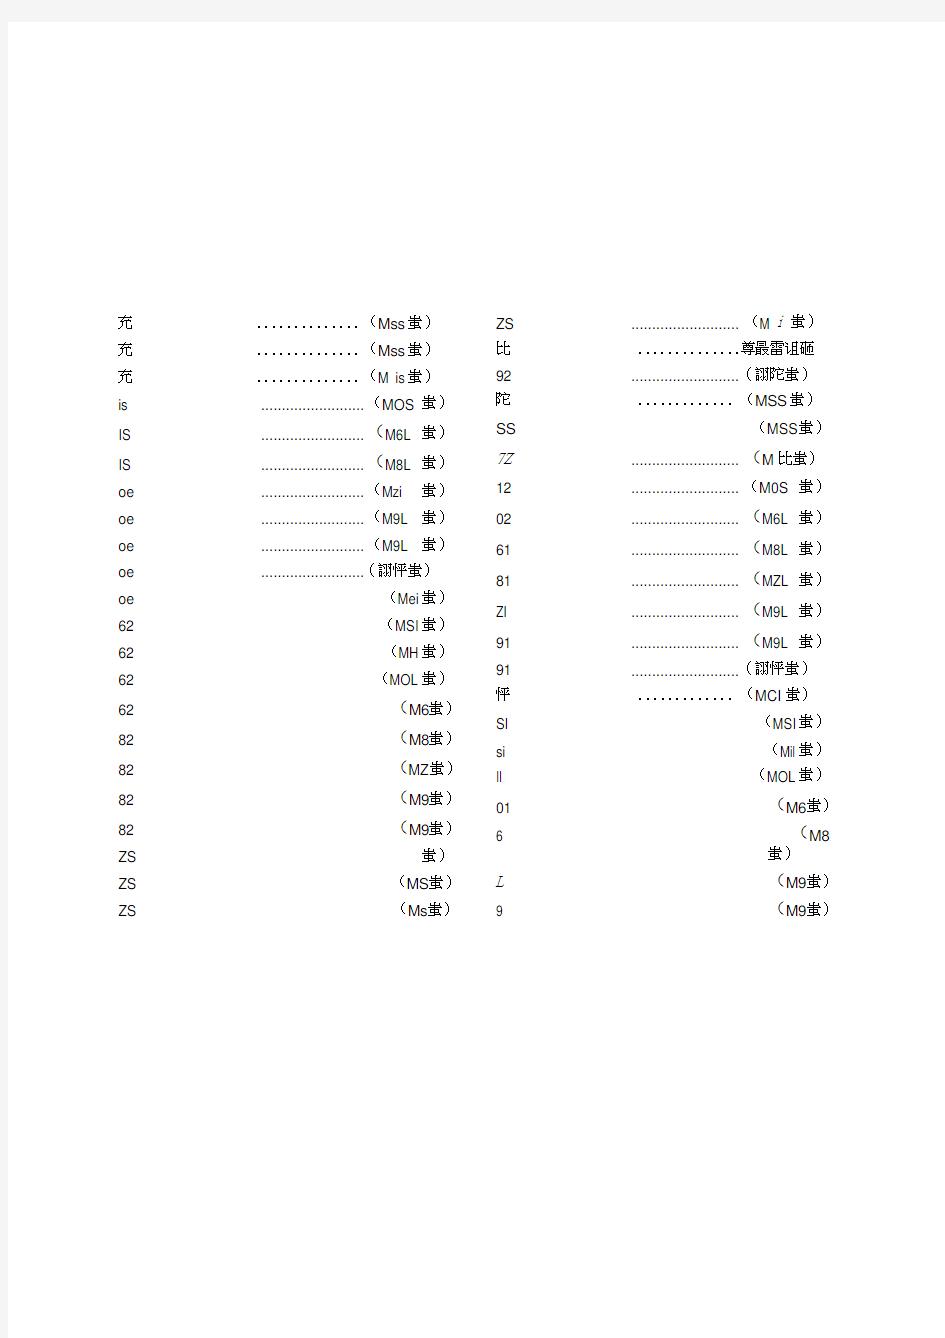 标准日语初级上册练习题与答案(A4打印版)